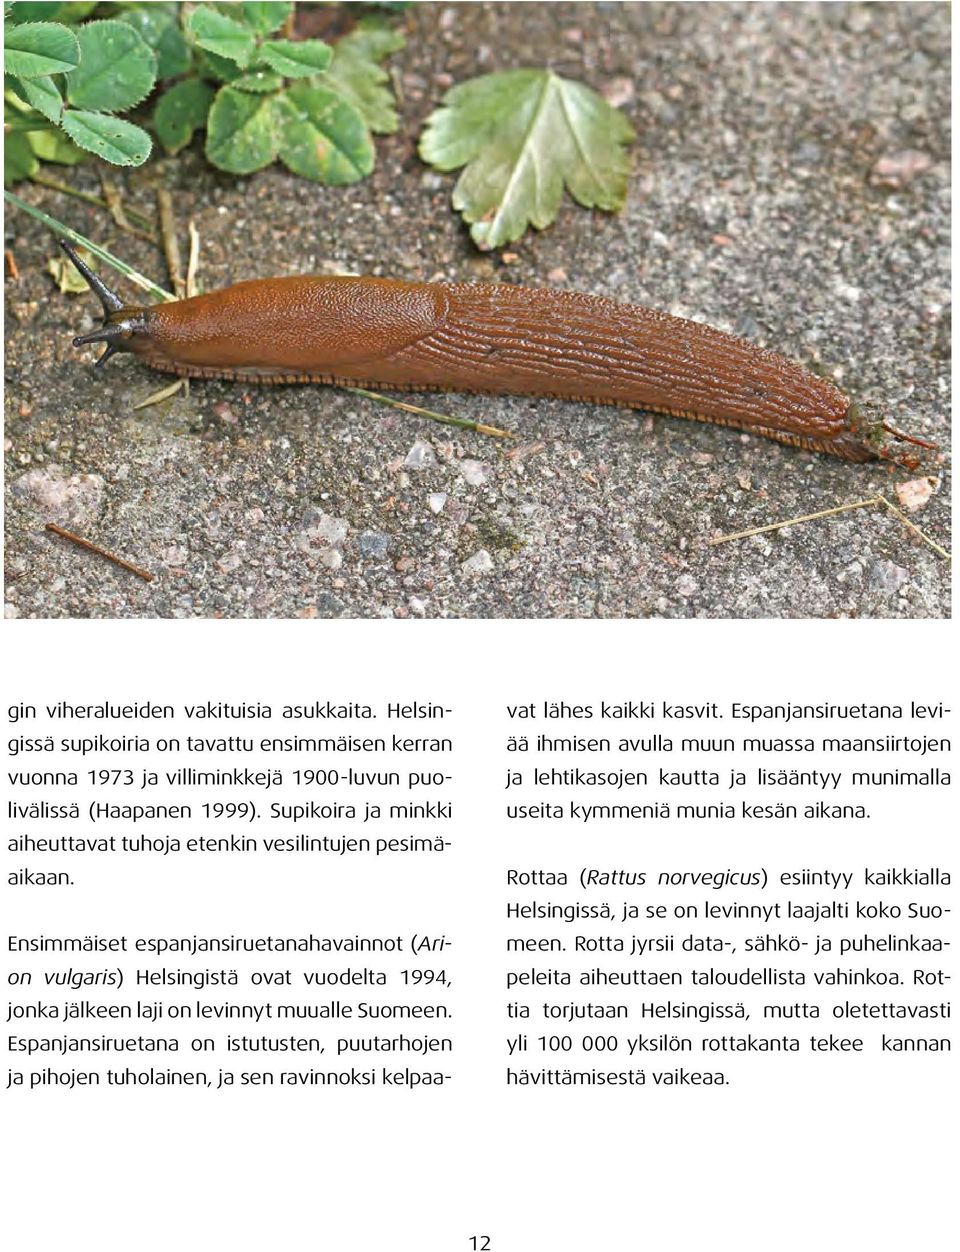 Ensimmäiset espanjansiruetanahavainnot (Arion vulgaris) Helsingistä ovat vuodelta 1994, jonka jälkeen laji on levinnyt muualle Suomeen.